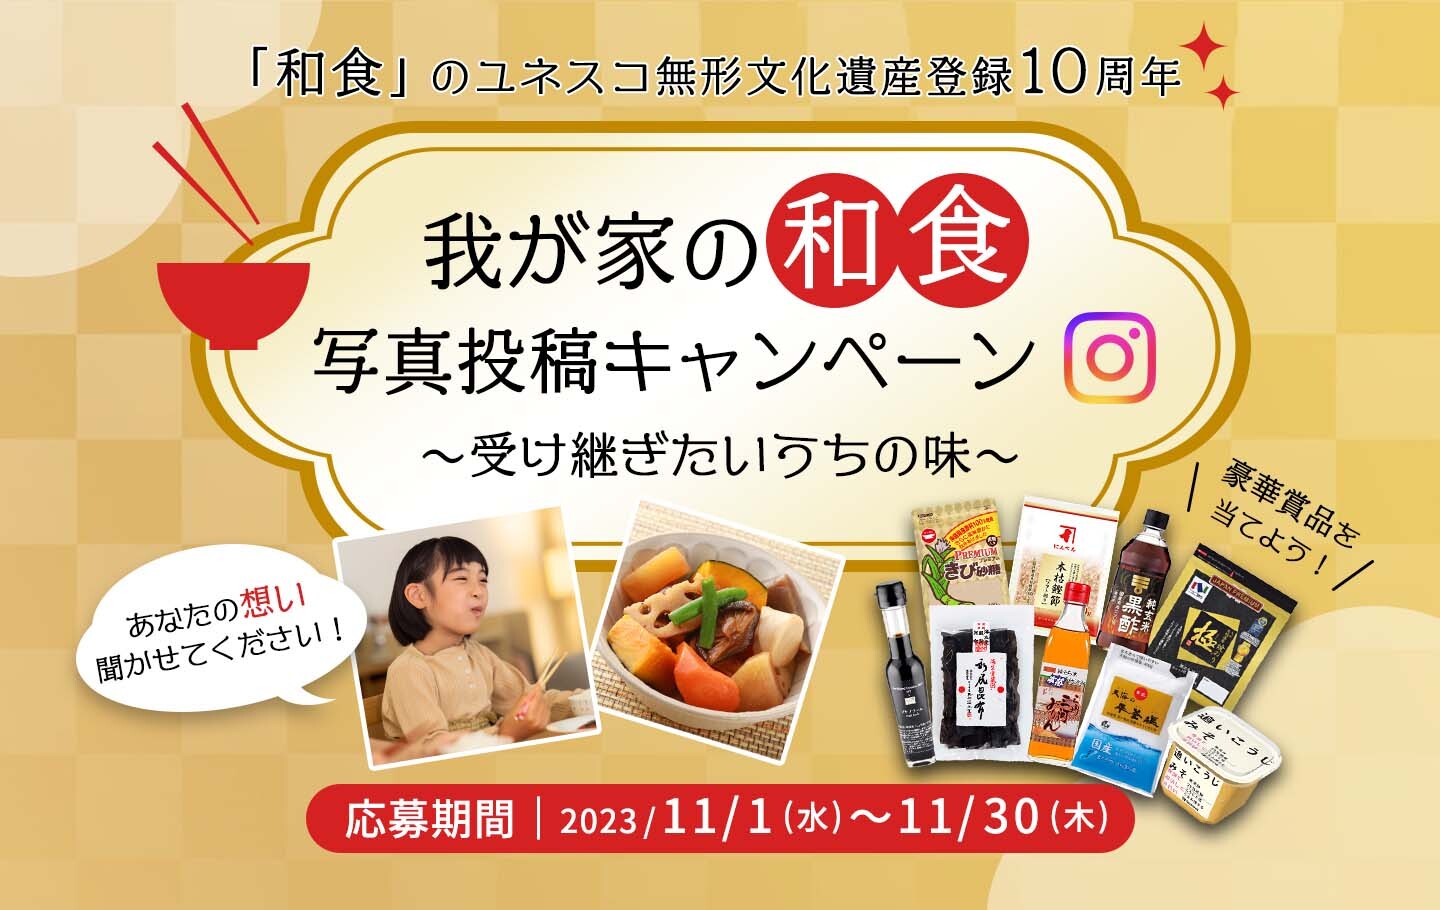 11月24日は“いい日本食”「和食の日」
～我が家の和食～　Instagram投稿で豪華賞品が当たる！